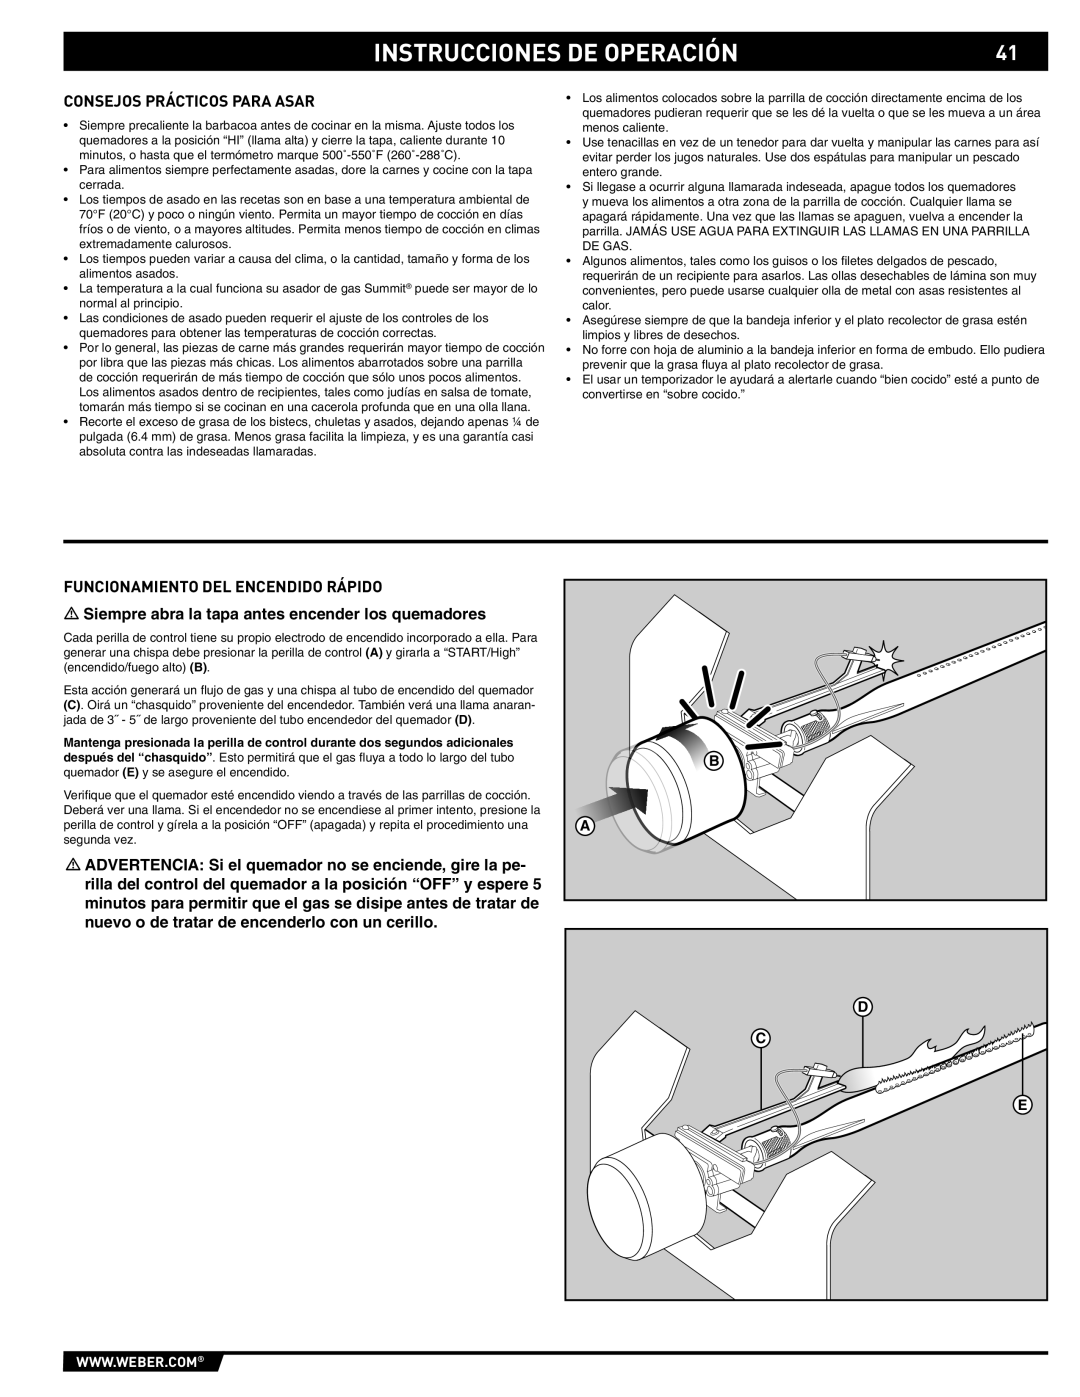 Weber 89561 manual Consejos Prácticos Para Asar, Funcionamiento DEL Encendido Rápido 